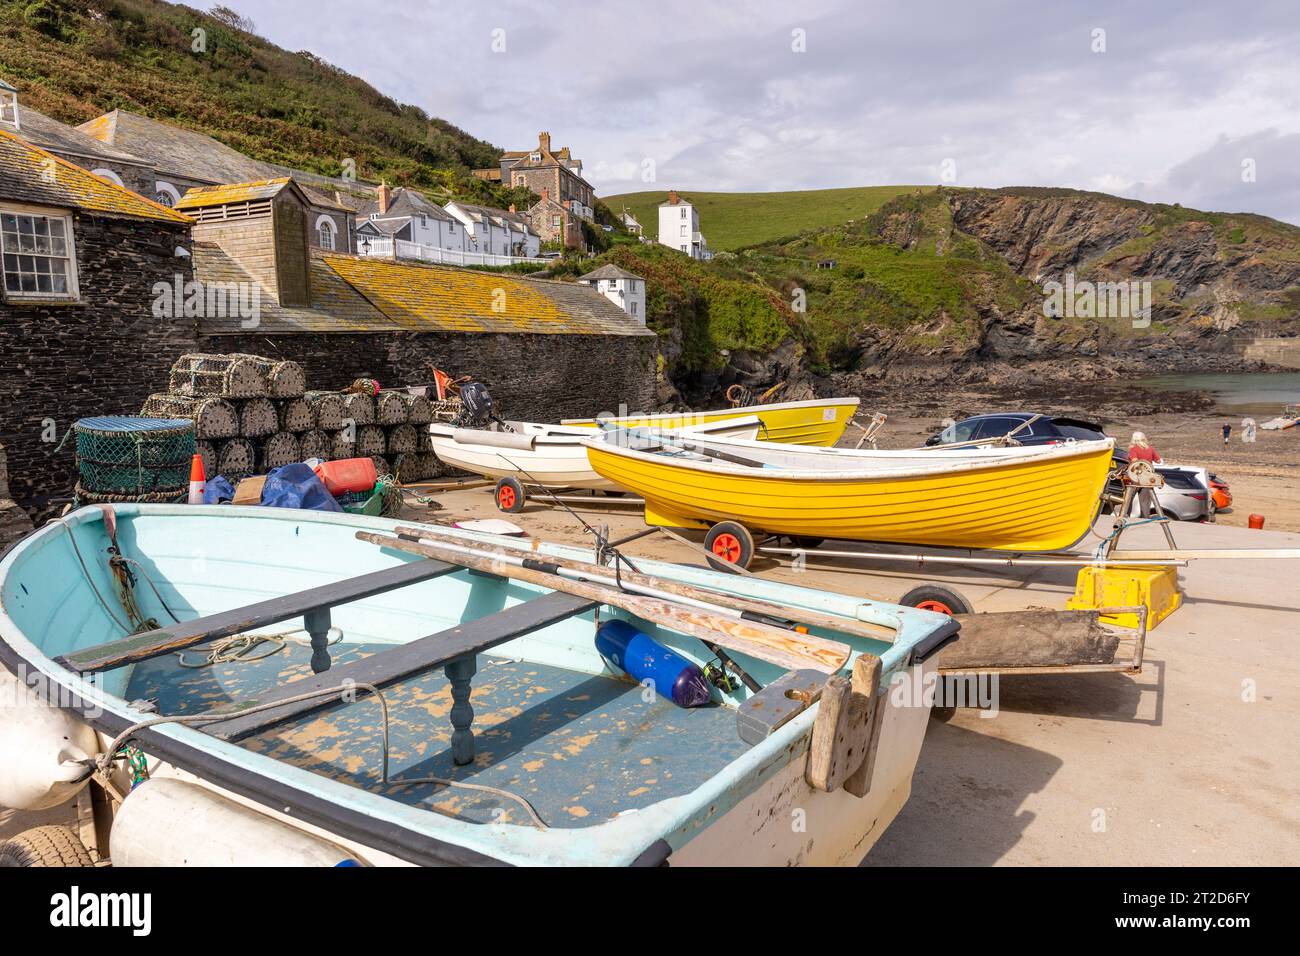 Port Isaac, villaggio di pescatori della Cornovaglia, sulla costa della Cornovaglia, popolare tra i turisti, poiché la serie Doc Martin è stata girata qui, Inghilterra, Regno Unito, 2023 Foto Stock